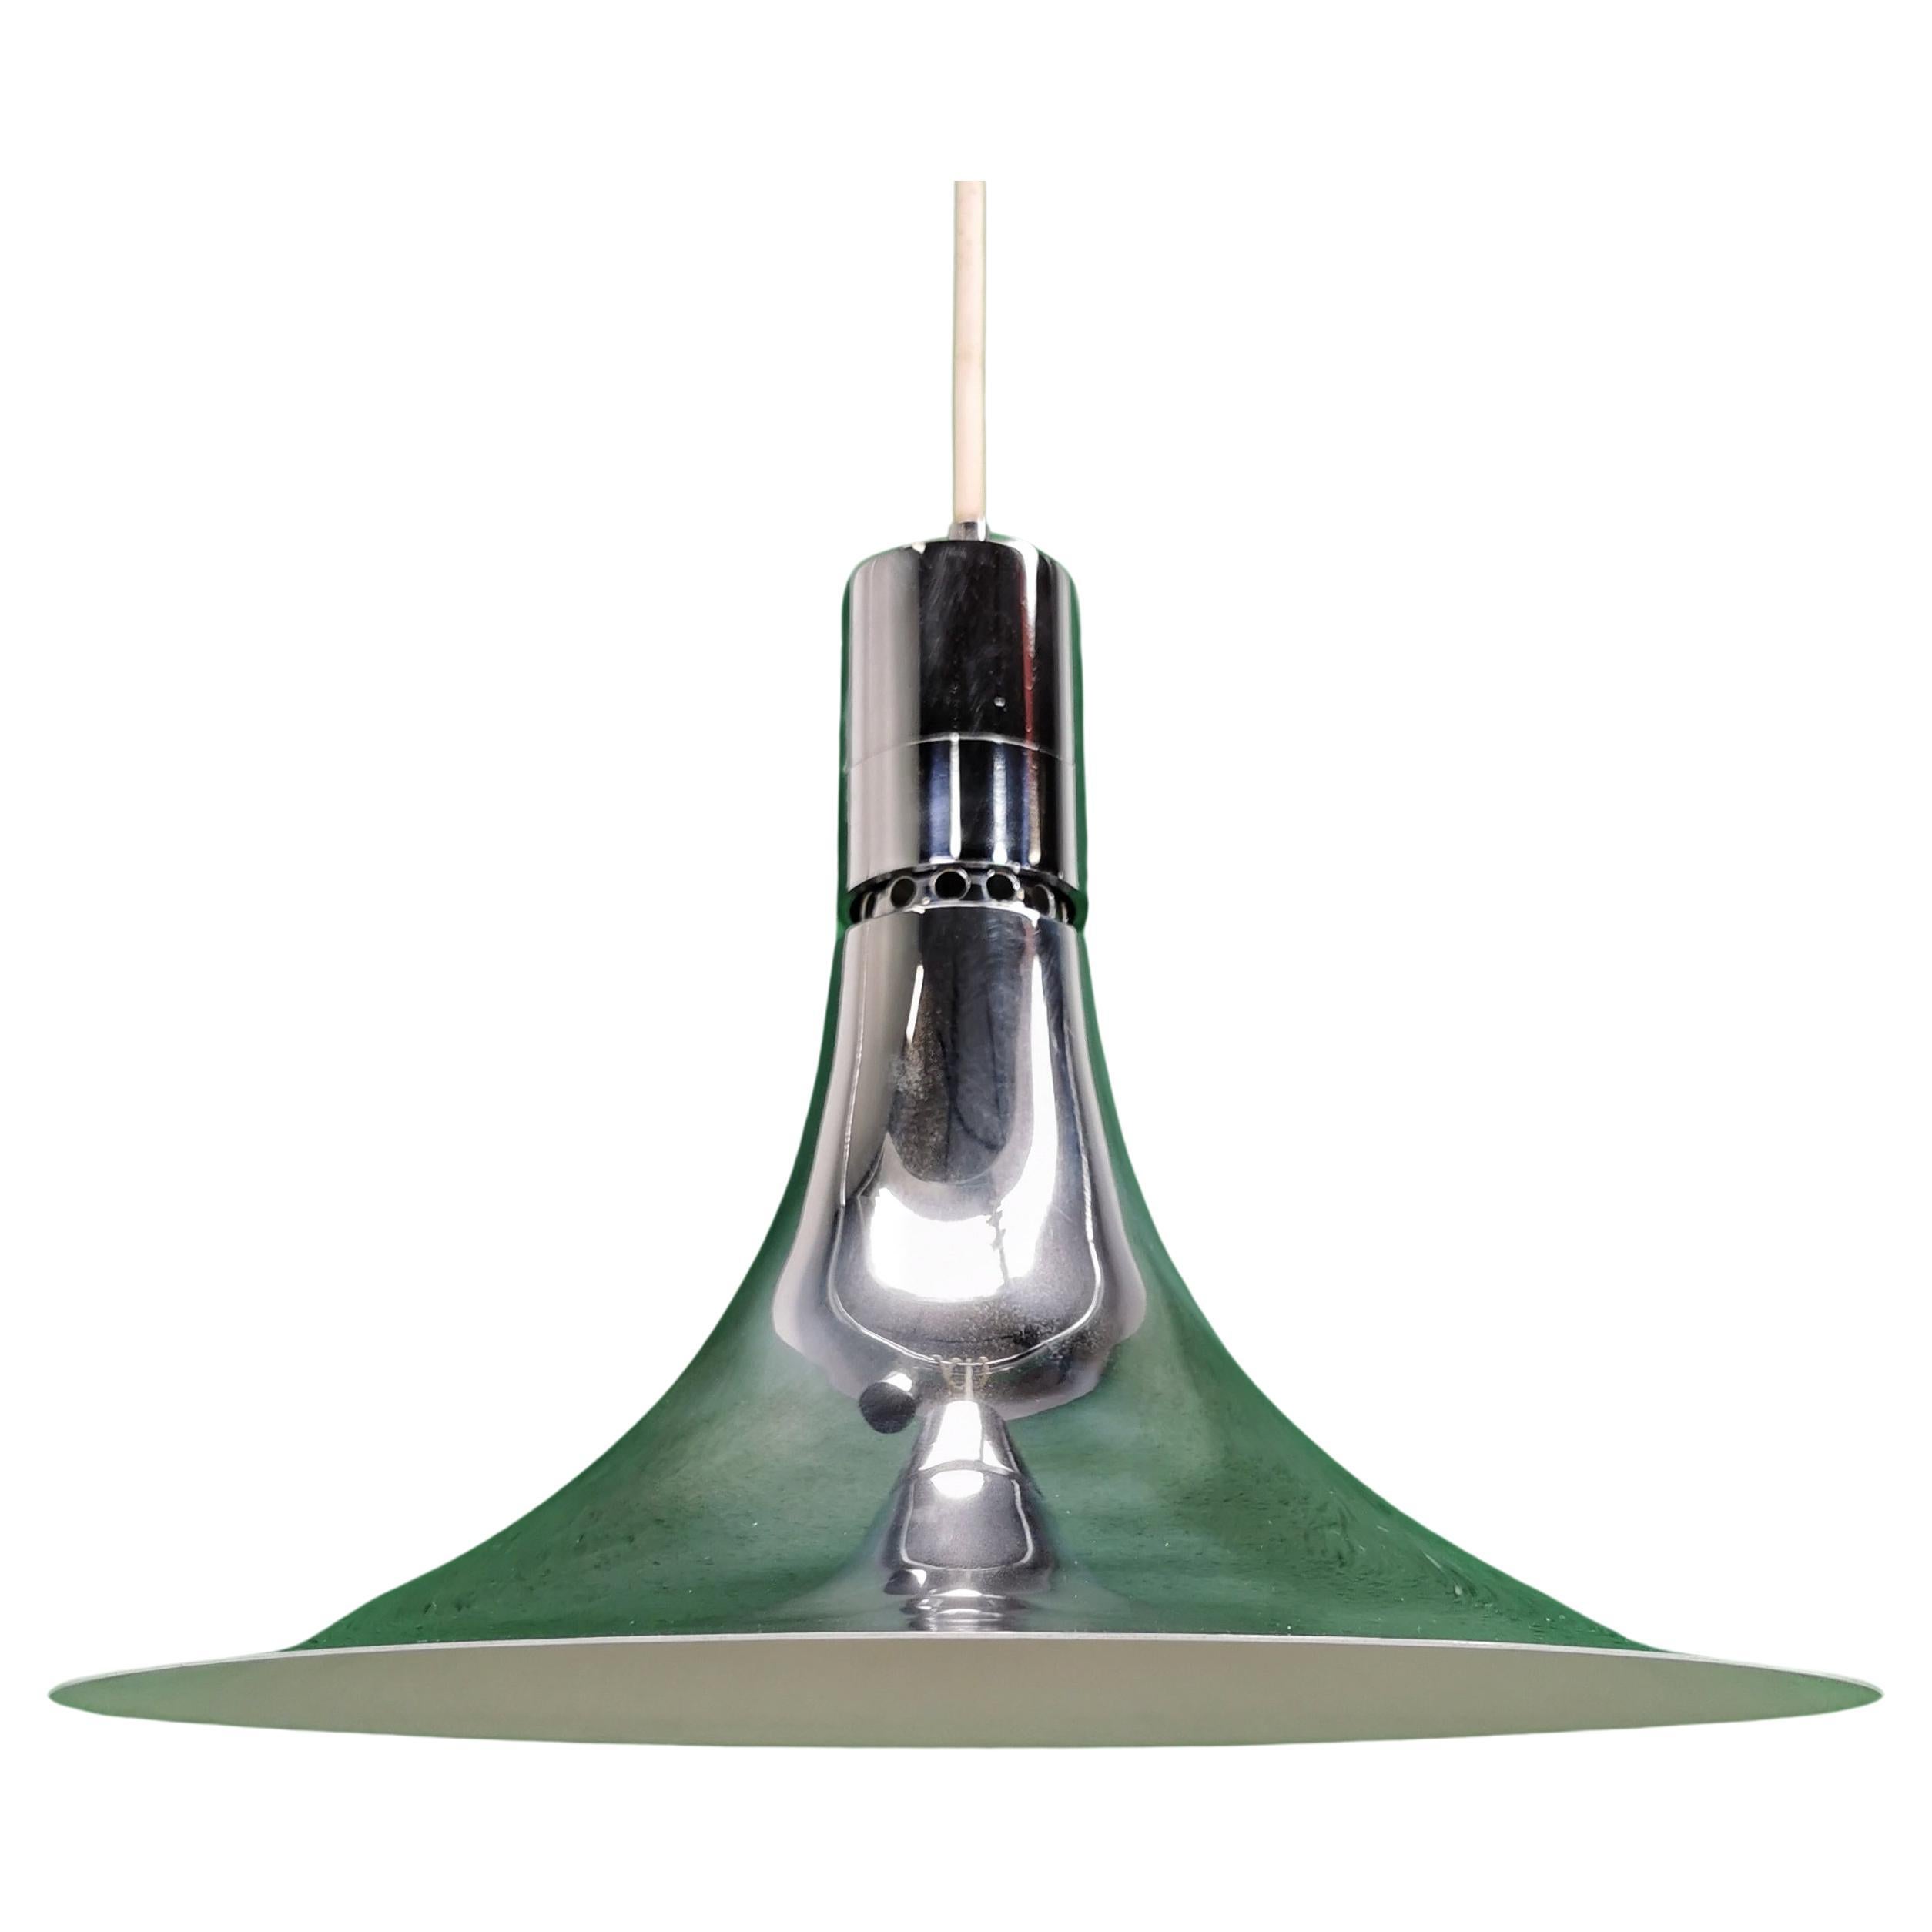 Paire de lampes suspendues de la série AM/AS, avec forme en acier miroir et intérieur de l'abat-jour émaillé blanc mat. Conçu dans les années 1960 par Franco Albini pour Sirrah. Les lampes sont en excellent état.